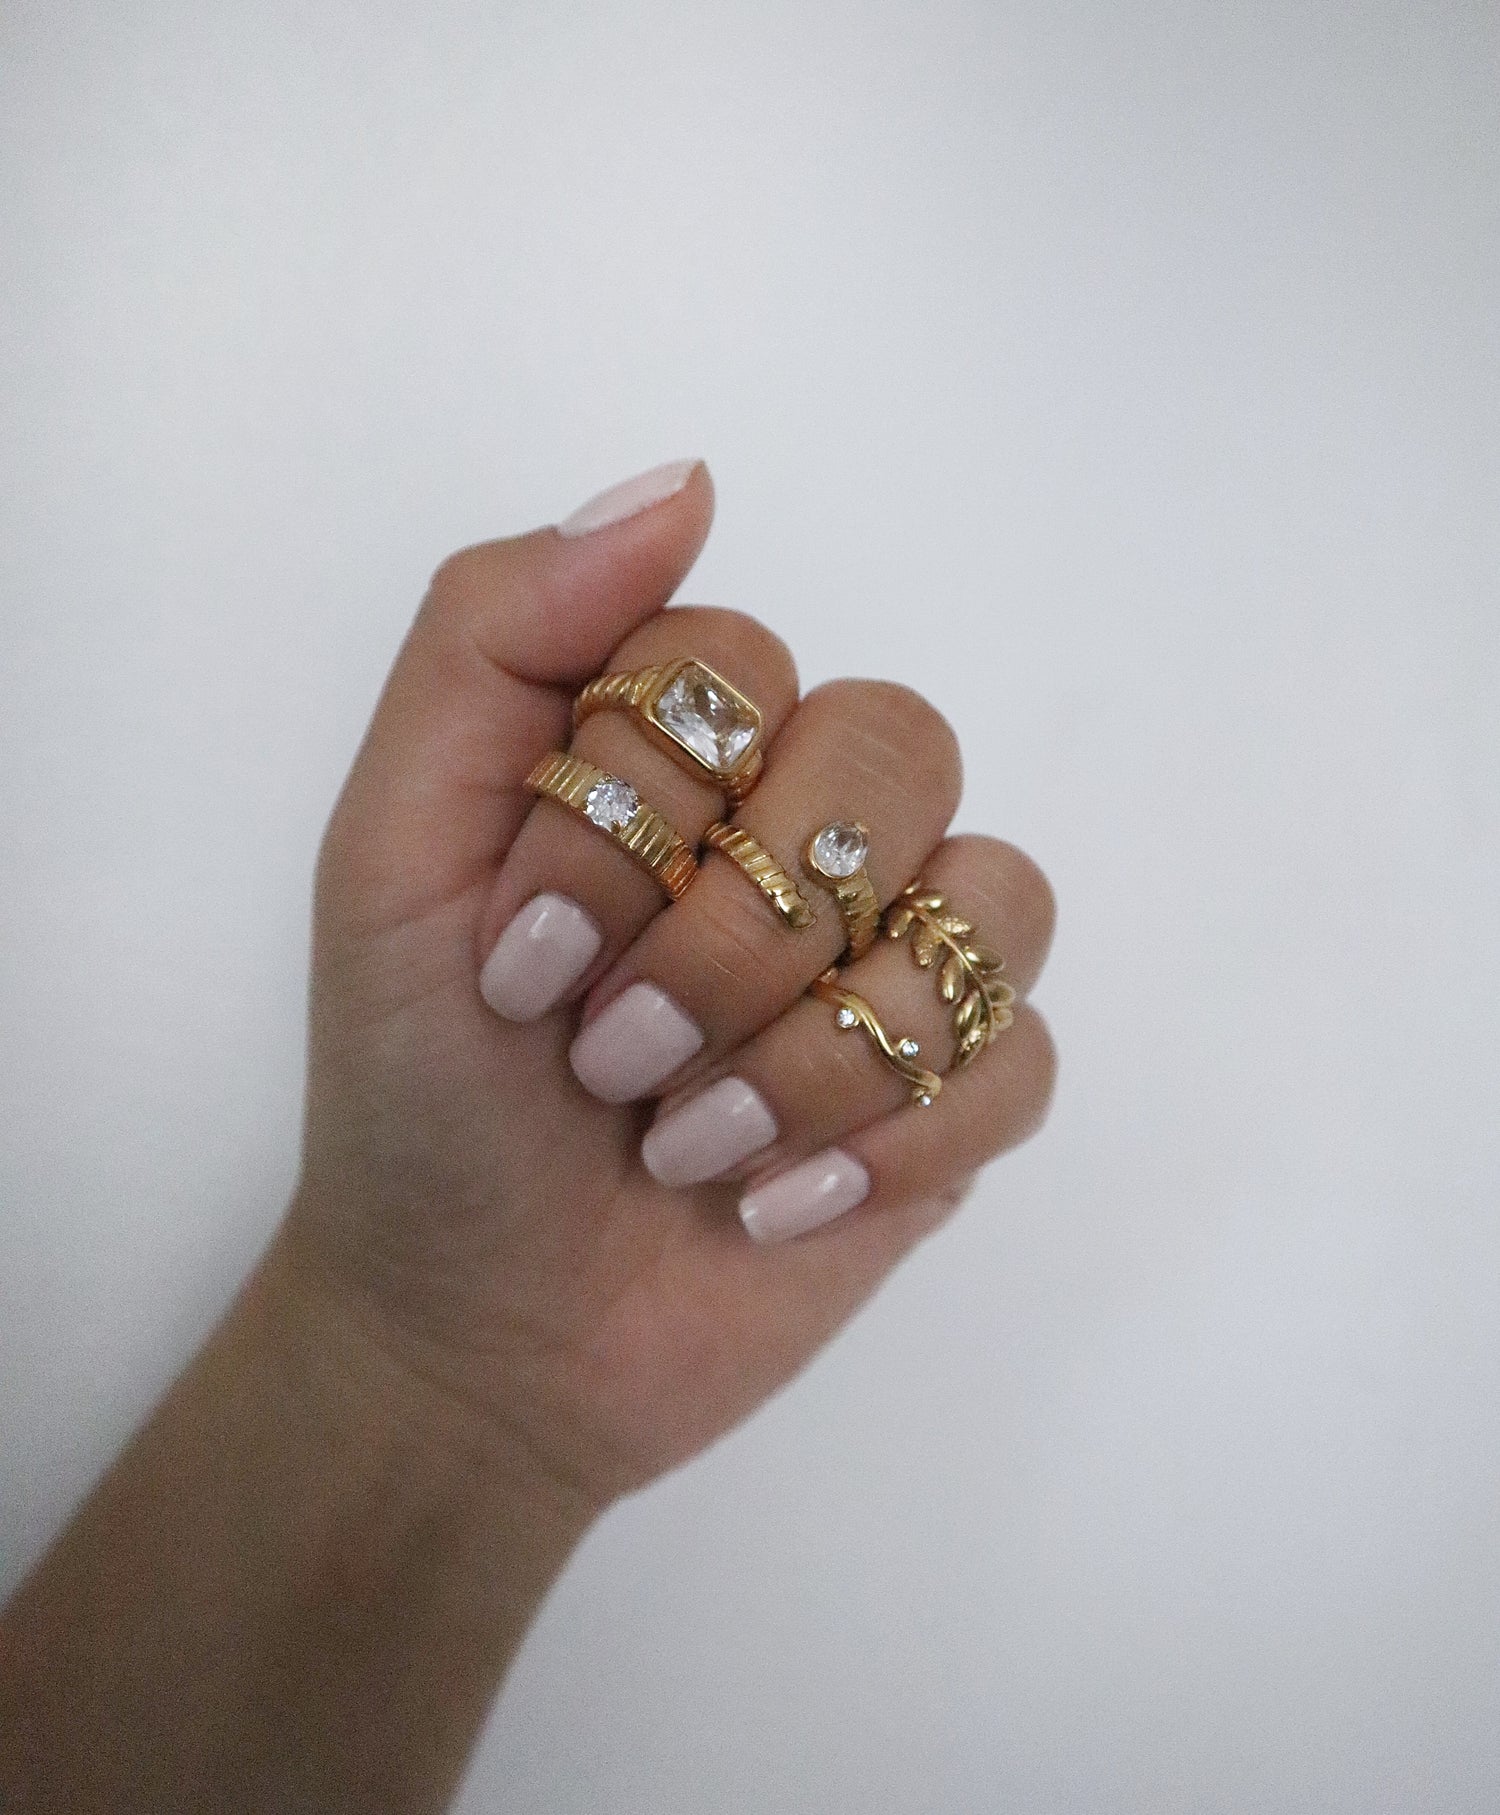 RINGS - JESSA JEWELRY | GOLD JEWELRY; earrings, rings, necklaces, jewelry storage; gold jewelry for everyday wear, minimalistic jewelry